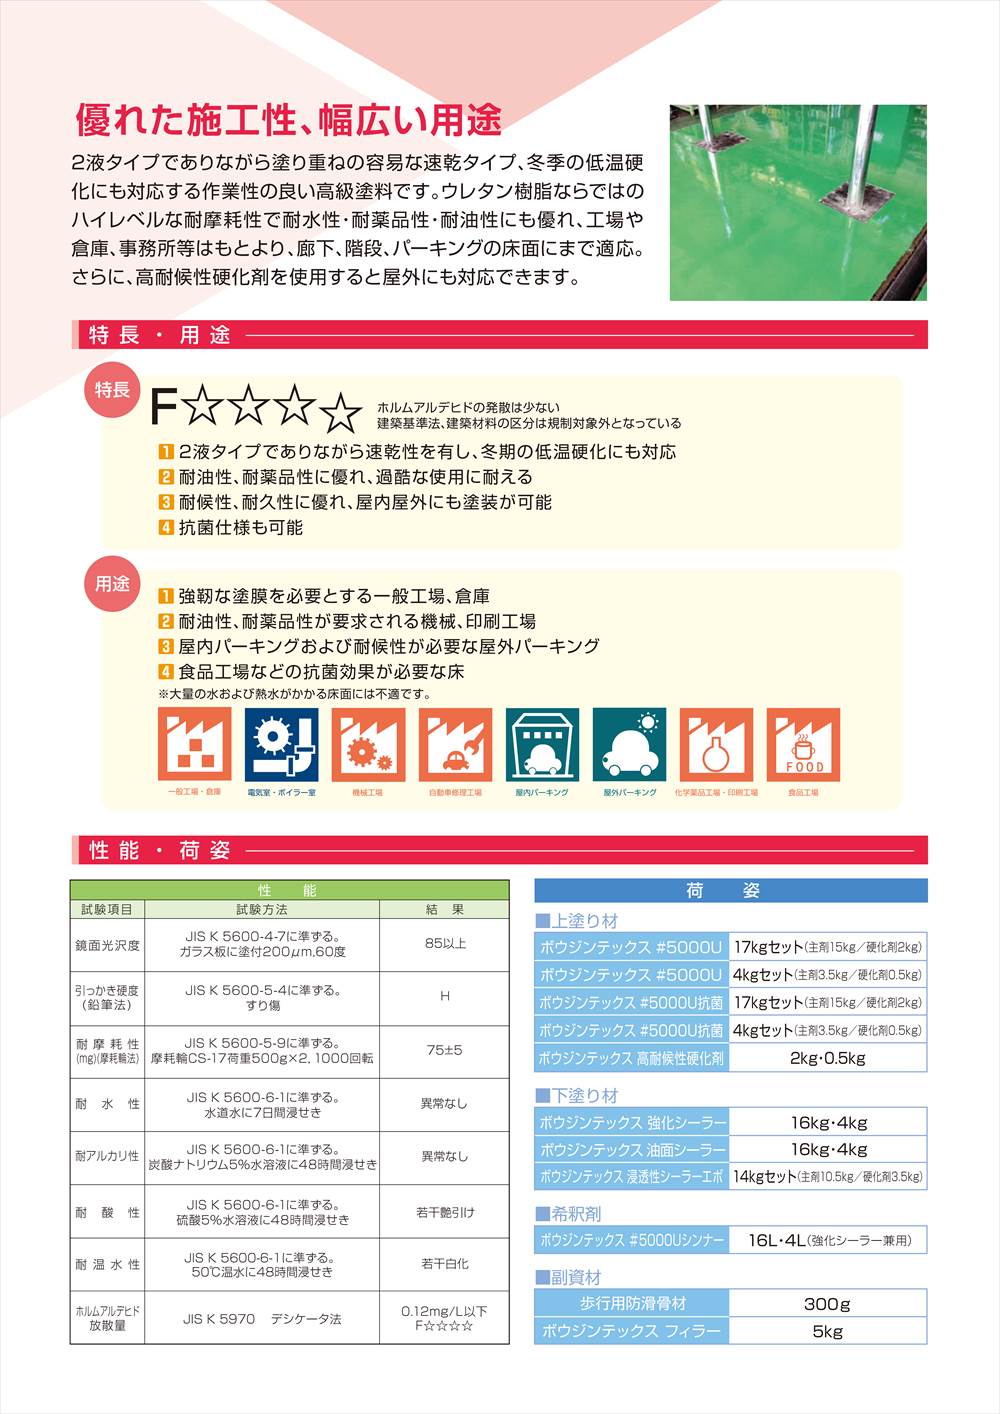 ボウジンテックス#5000U 標準 紺 4kgセット【メーカー直送便/代引不可 